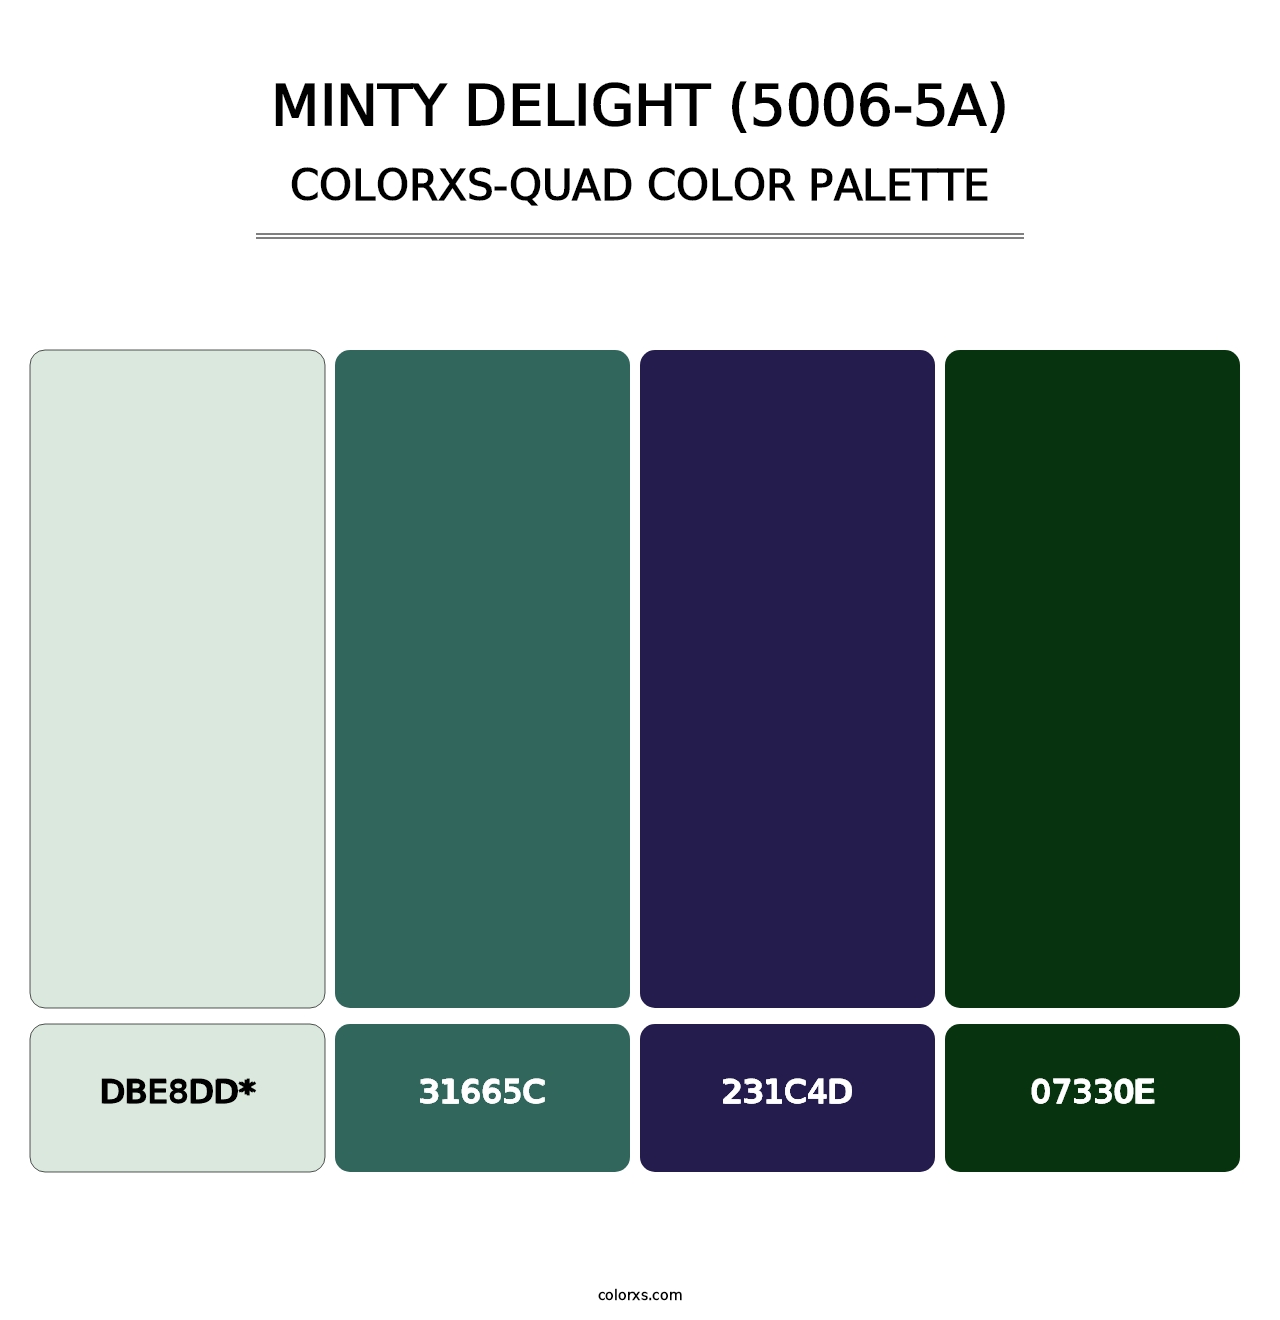 Minty Delight (5006-5A) - Colorxs Quad Palette